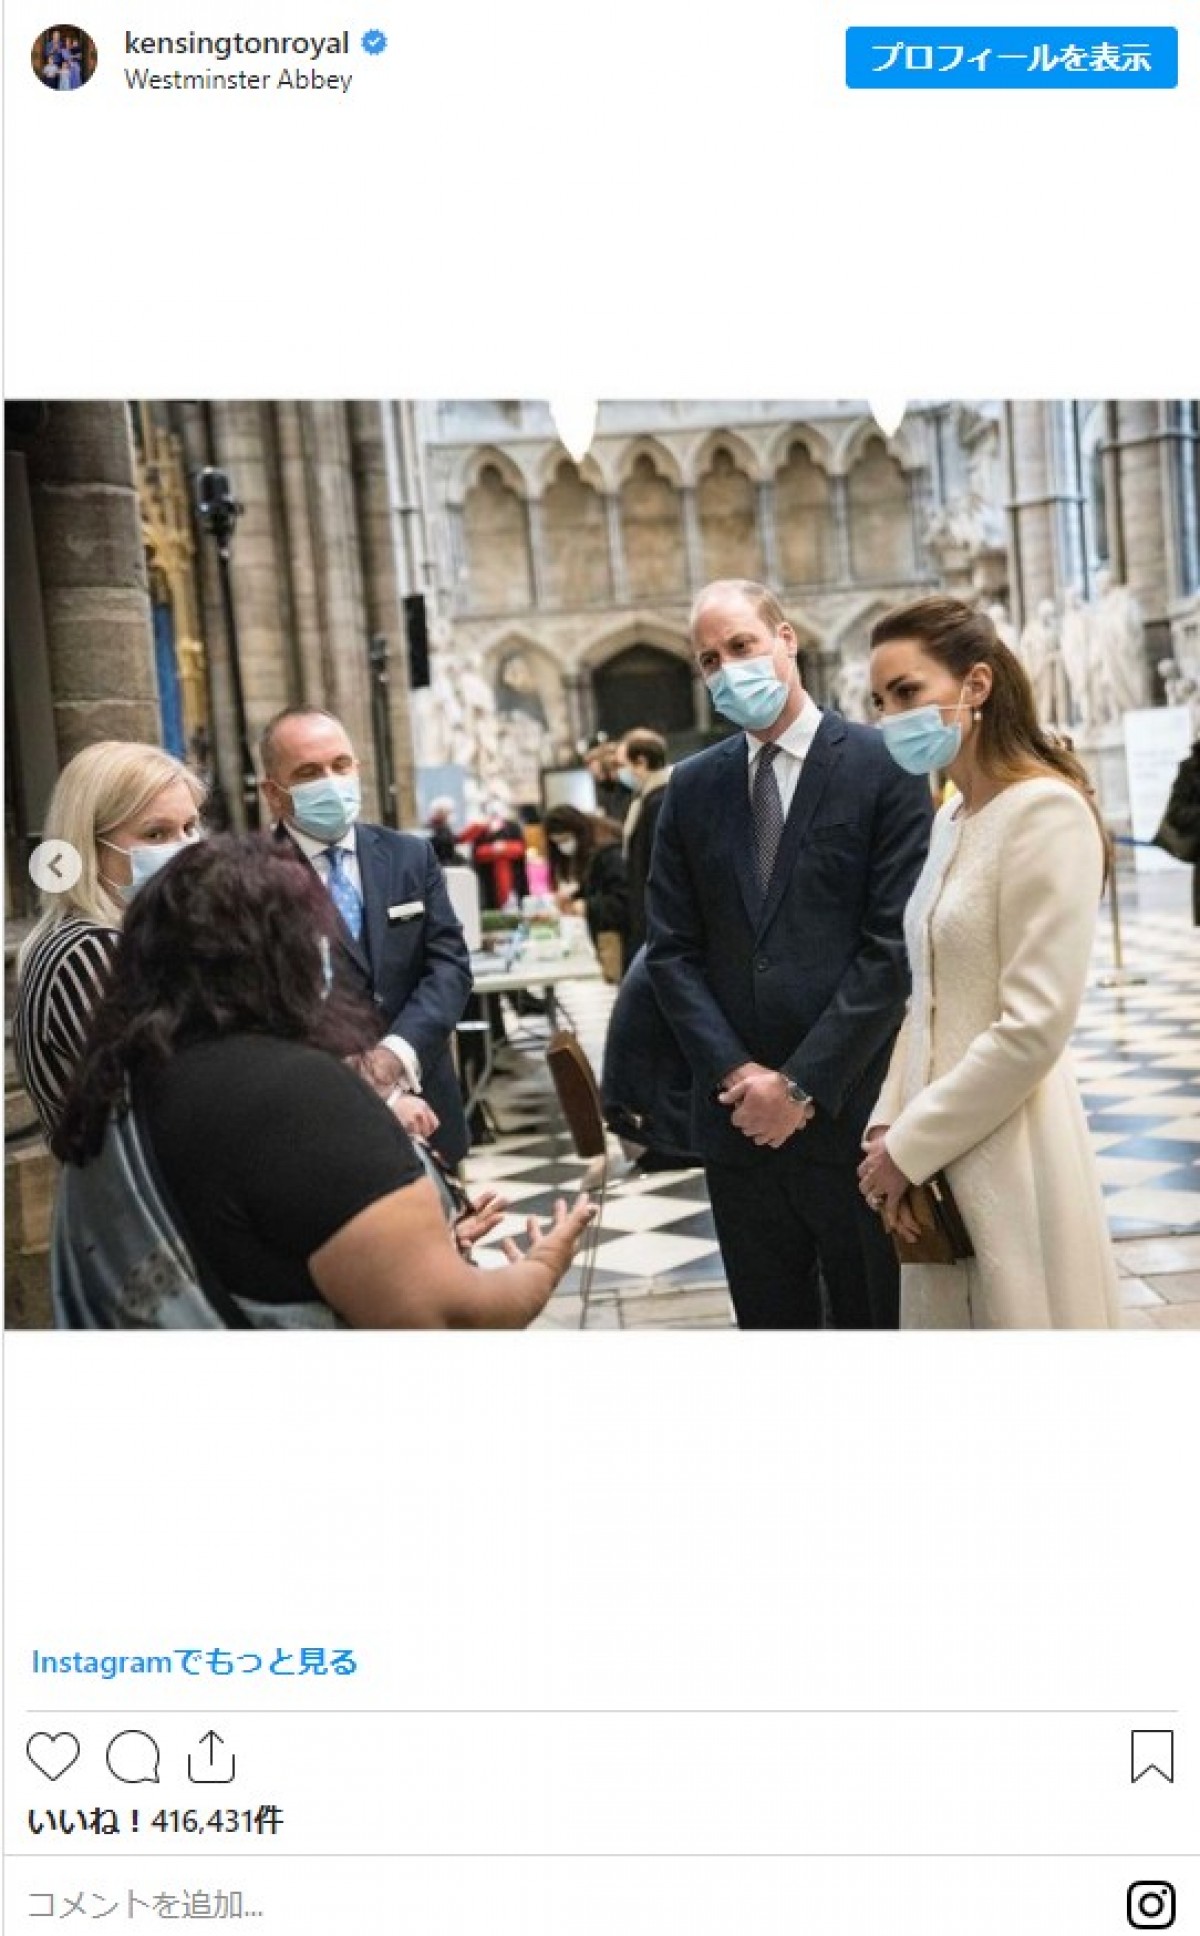 英キャサリン妃の白コート姿が美しい　ウィリアム王子と結婚式を挙げた寺院を再訪　